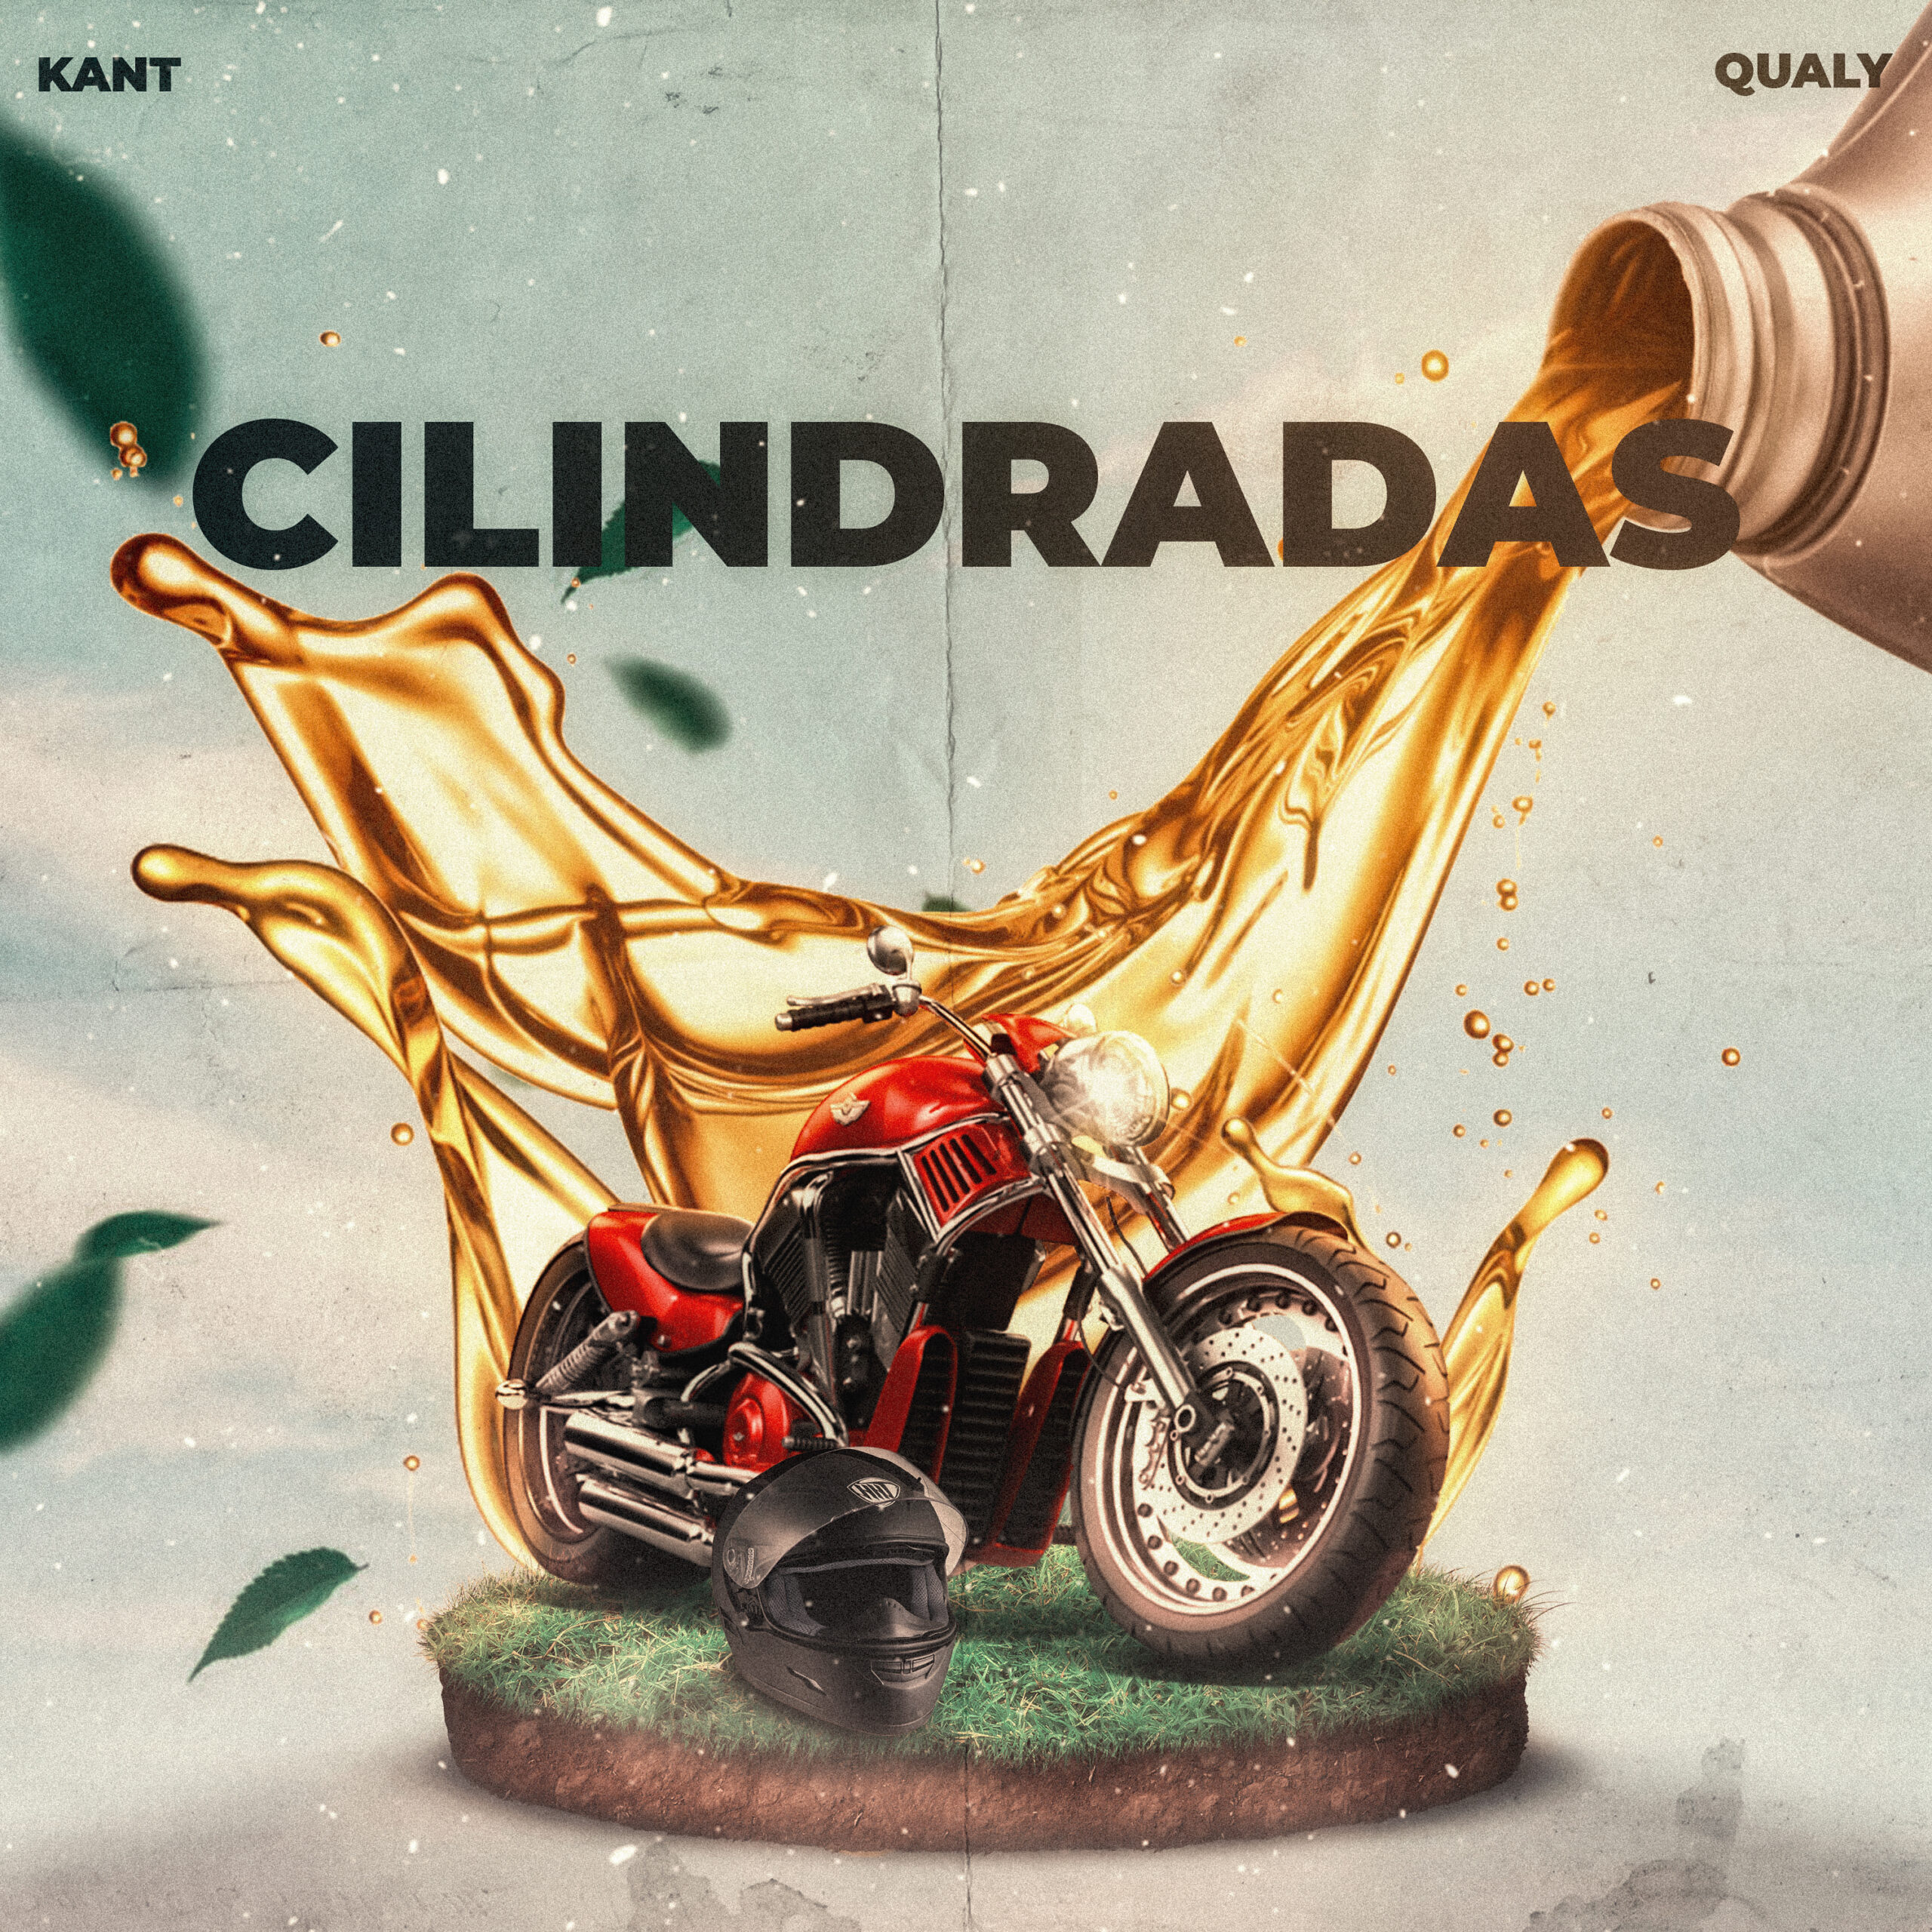 Kant, Pedro Qualy e Chiocki retratam o dia a dia dos motoboys em “Cilindradas”